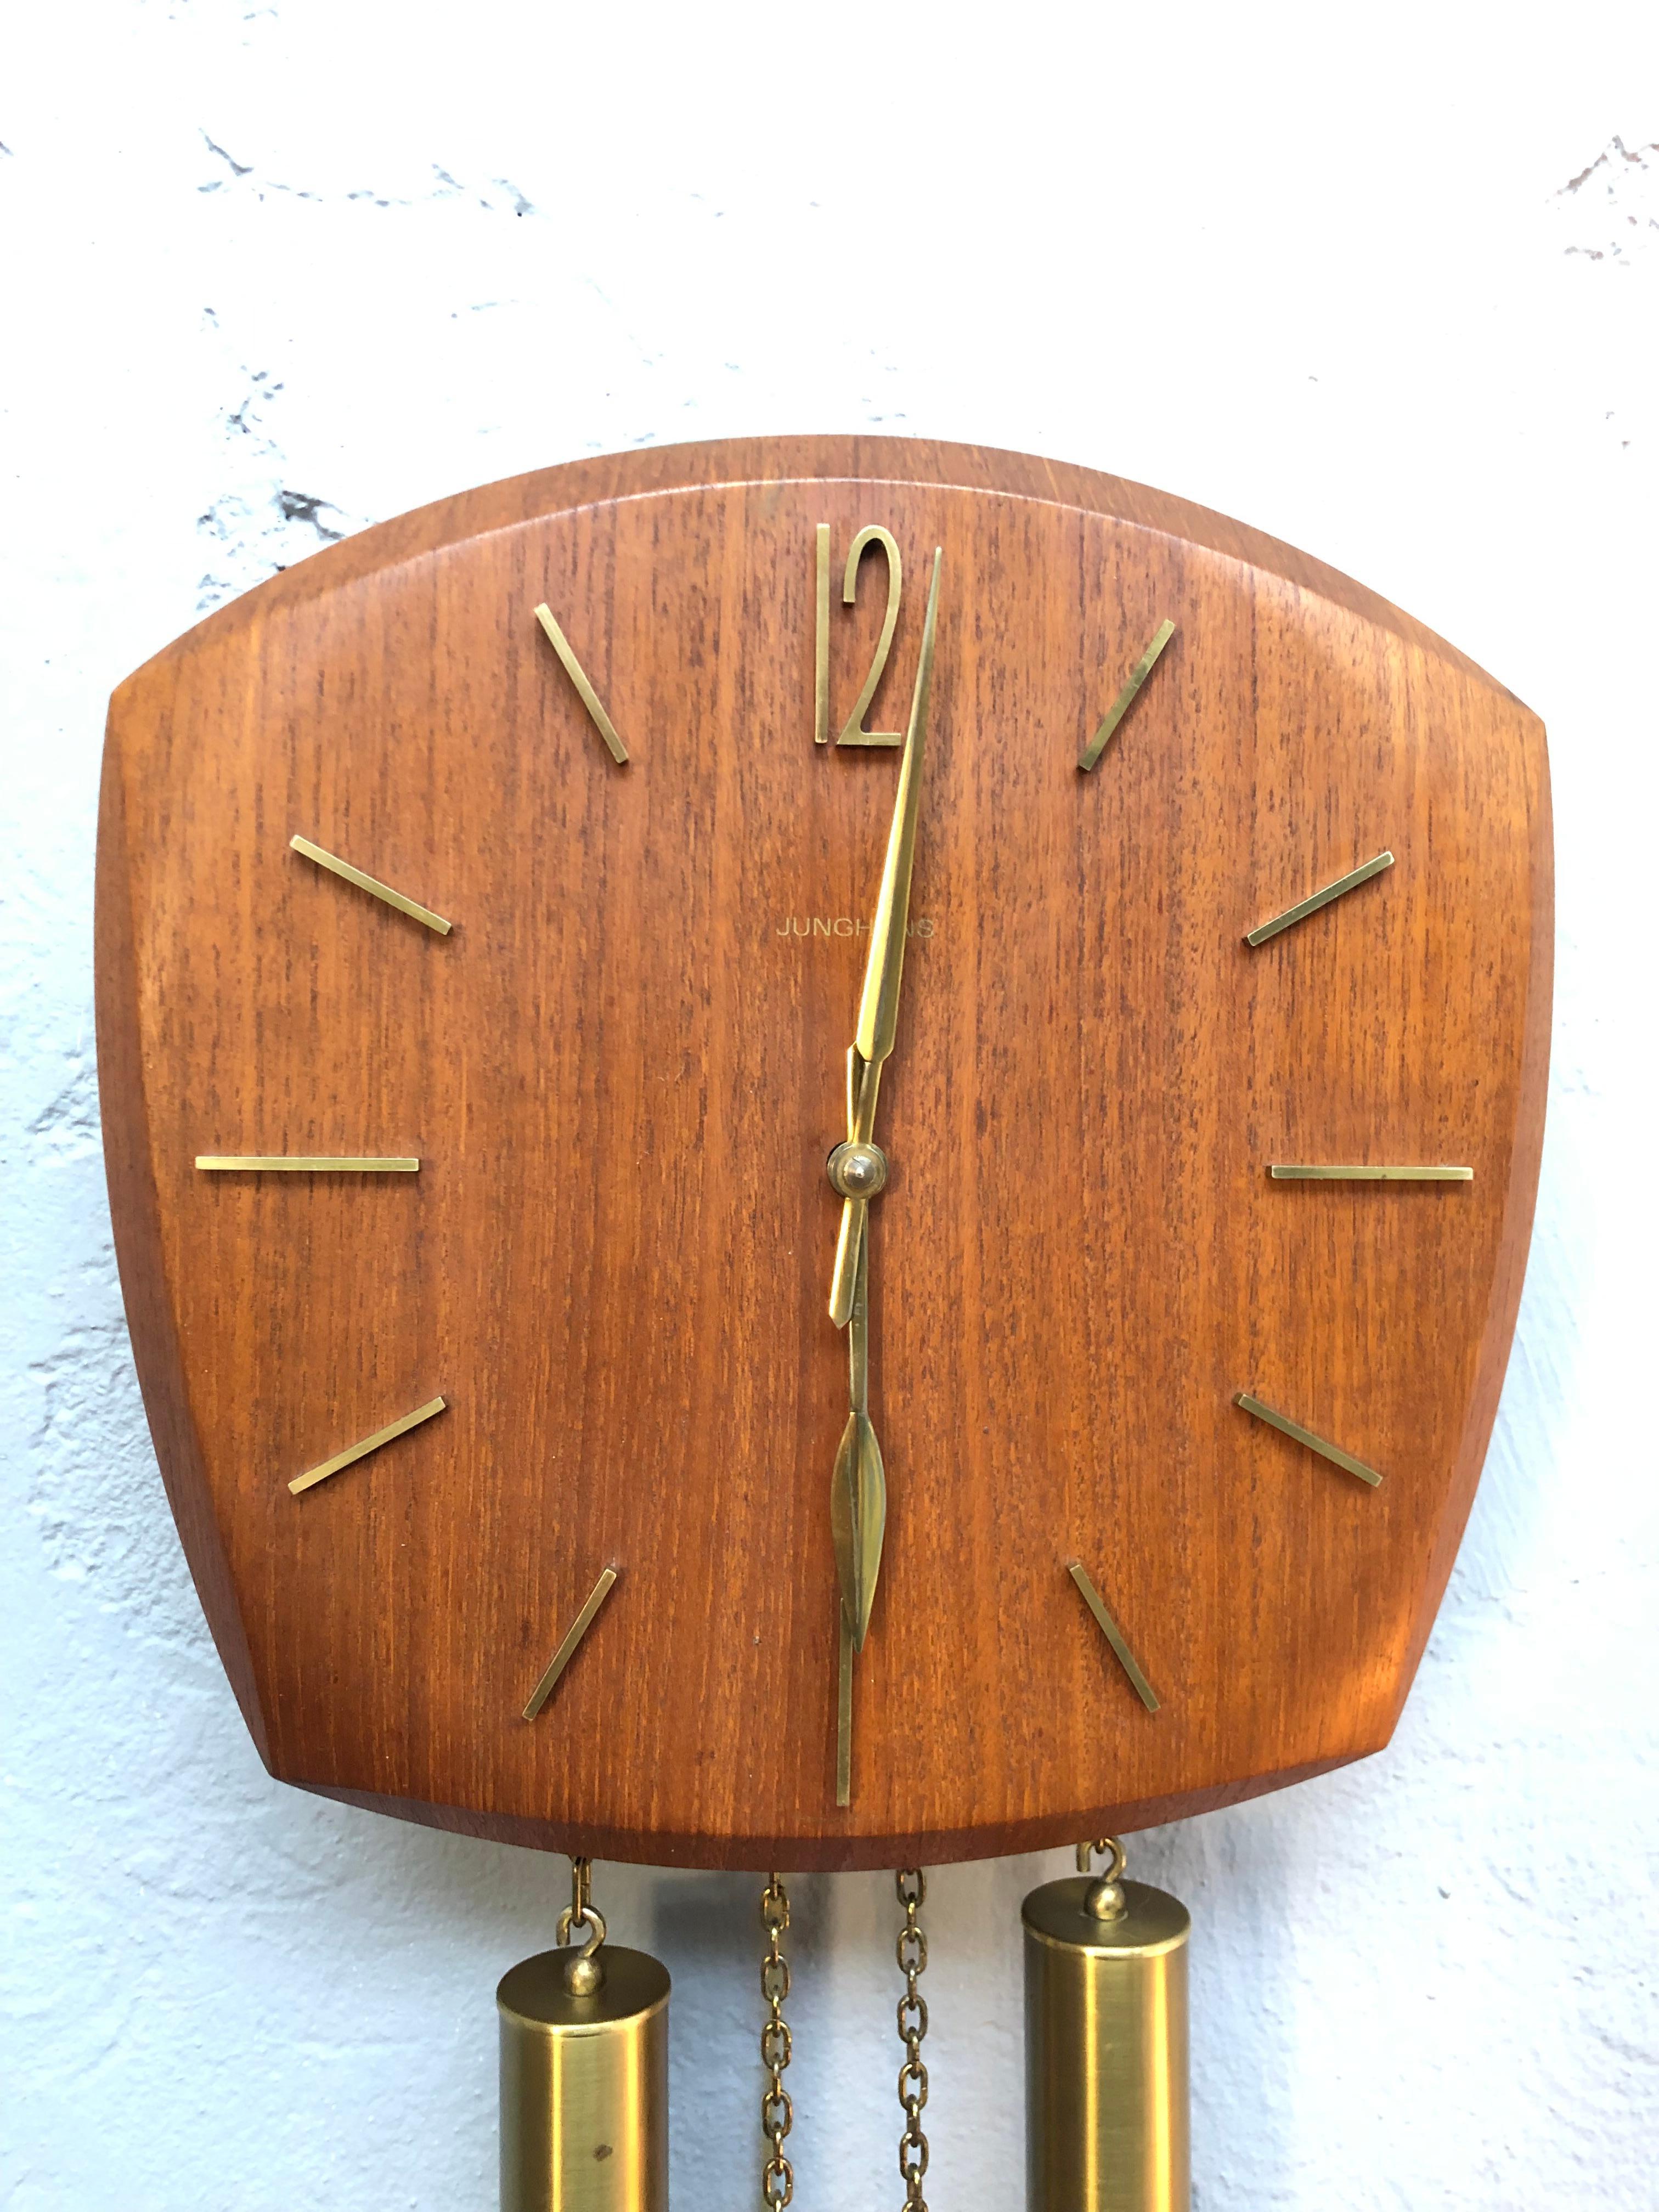 Mid-Century Modern Vintage Junghans Pendulum Wall Clock in Oak Veneer from the 1960s